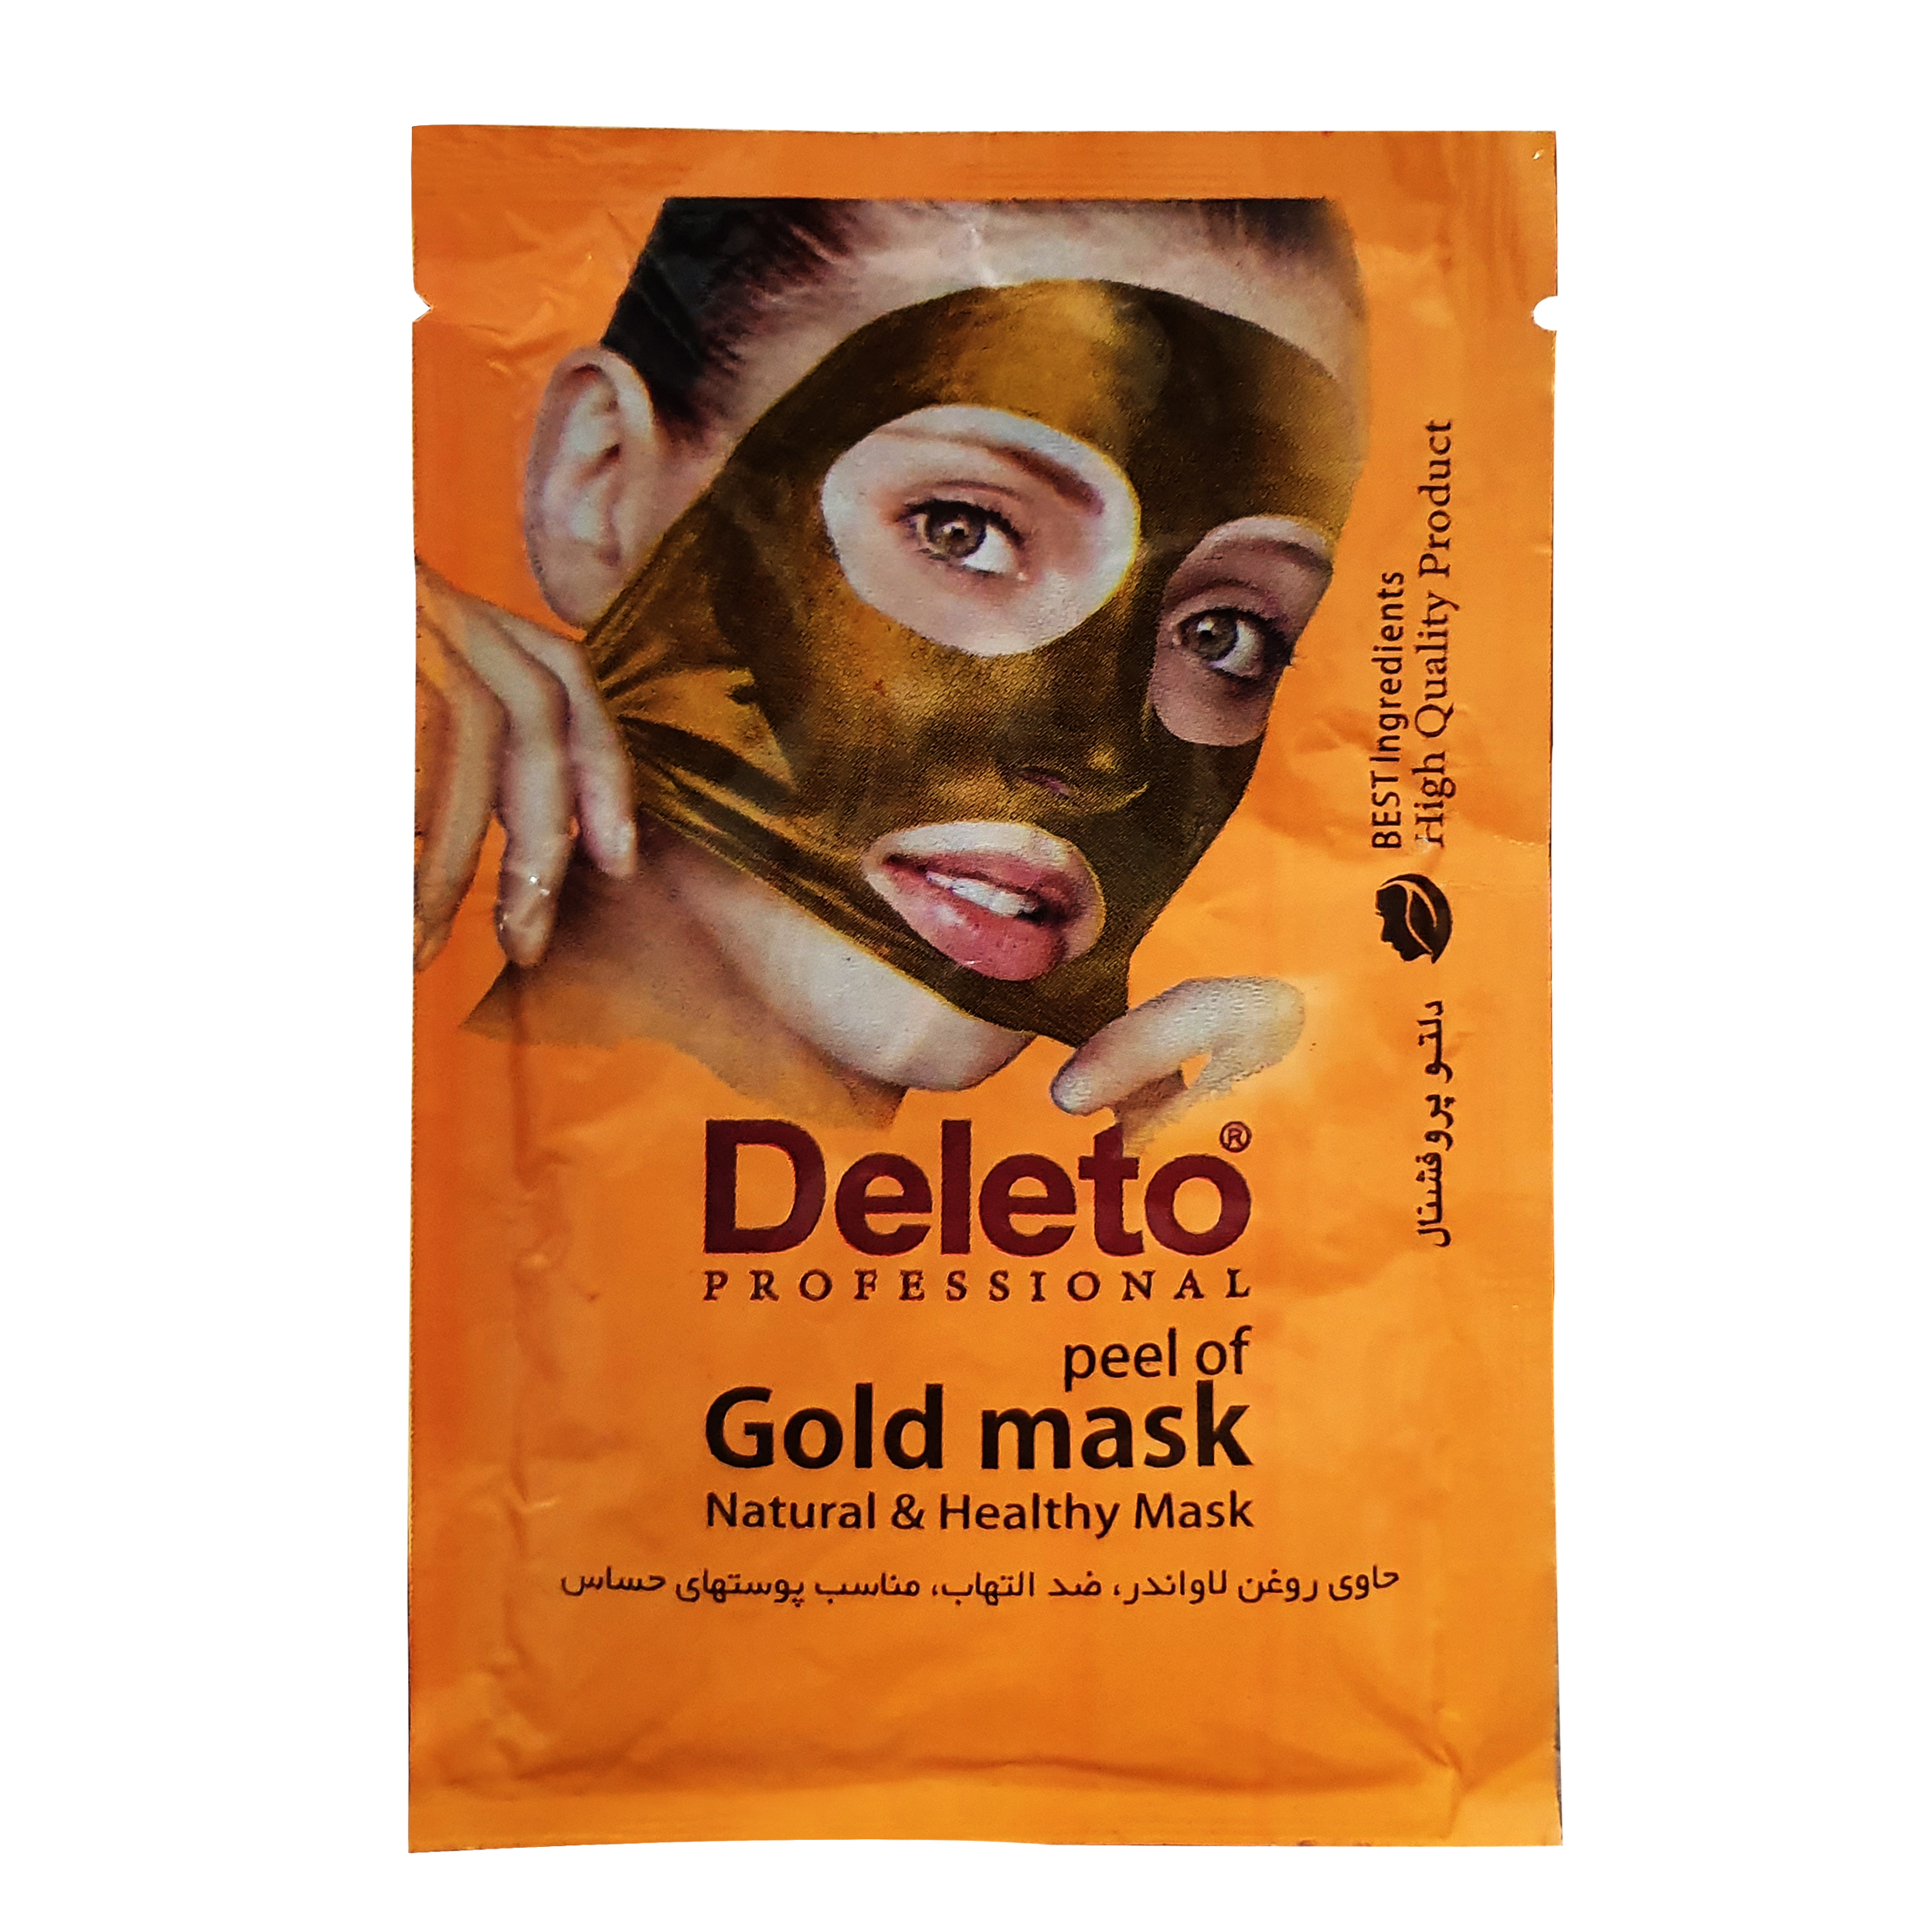 ماسک صورت دیلیتو مدل gold mask حجم 15 میلی لیتر